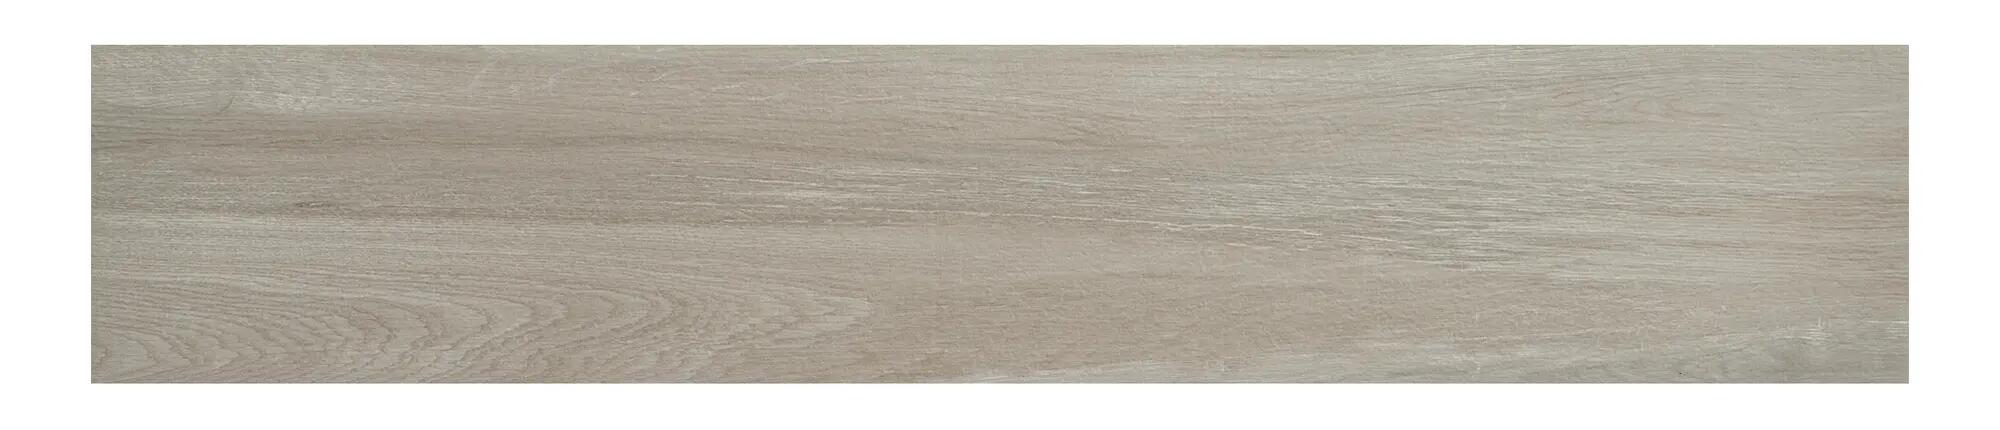 Muestra suelo porcelánico terk efecto madera gris 23x120 cm c1 artens